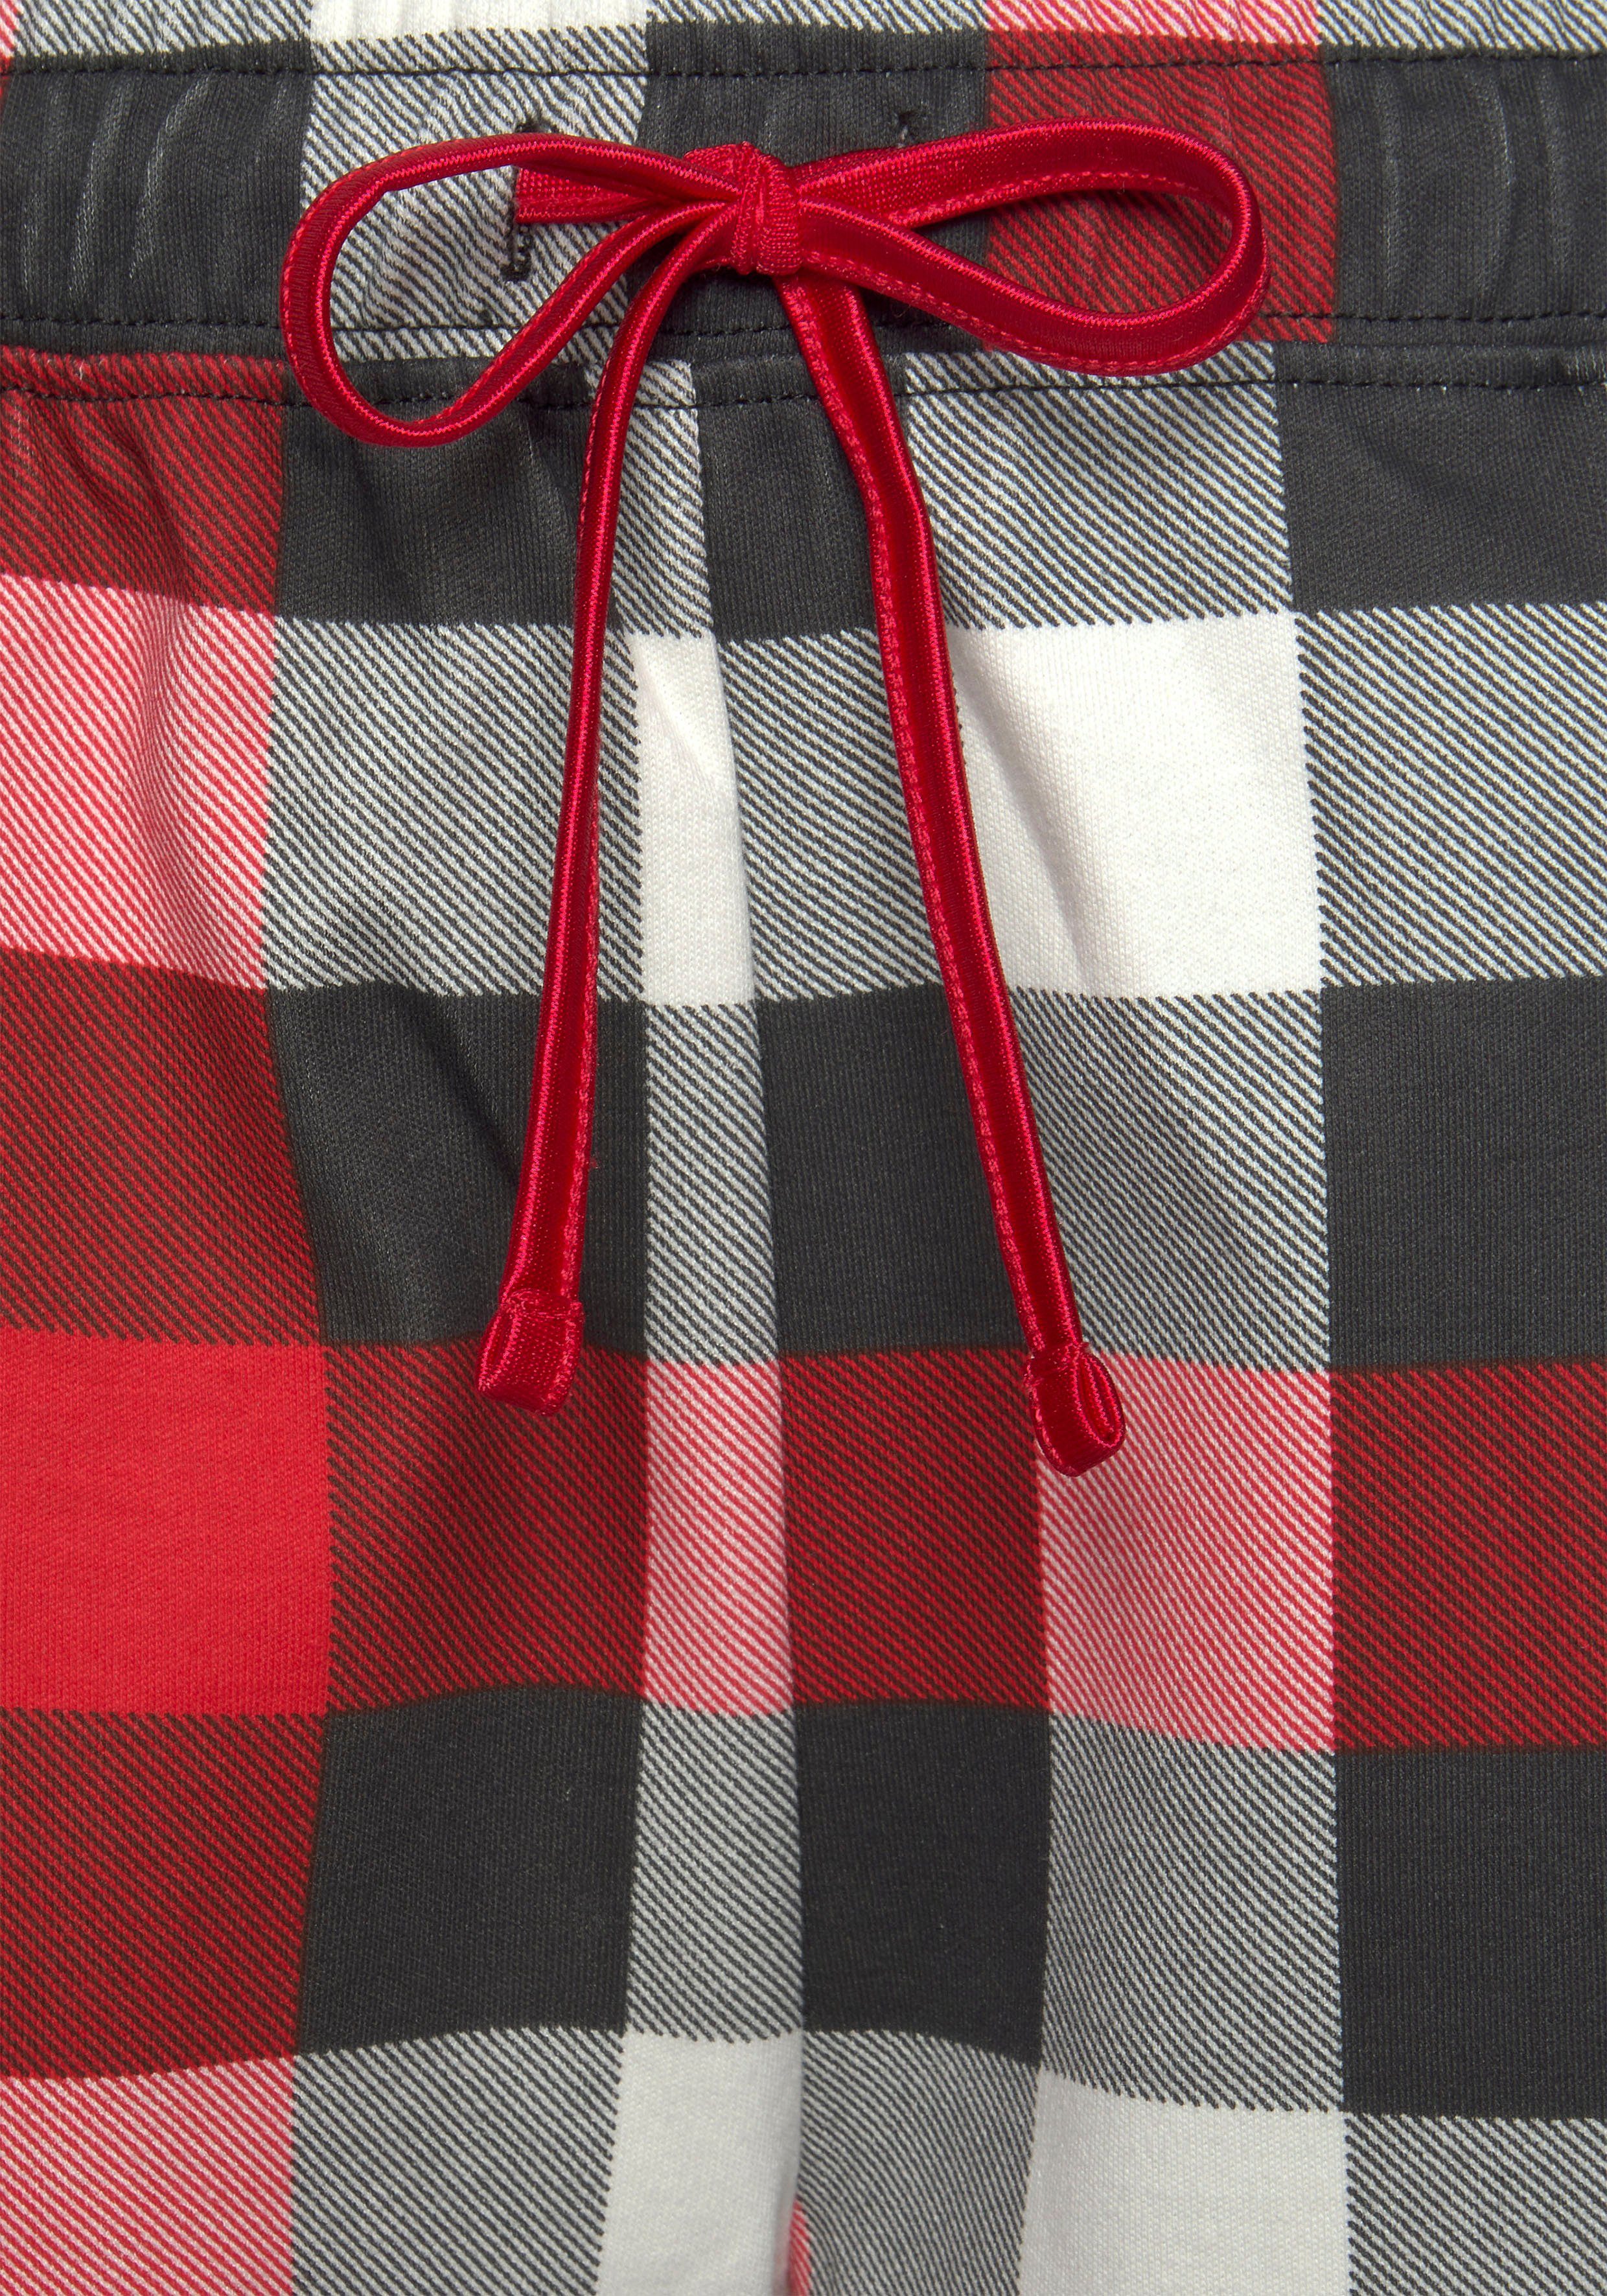 LASCANA Schlafanzug tlg., Schlafmaske) schwarz-rot-weiß (3 Karodruck incl. mit